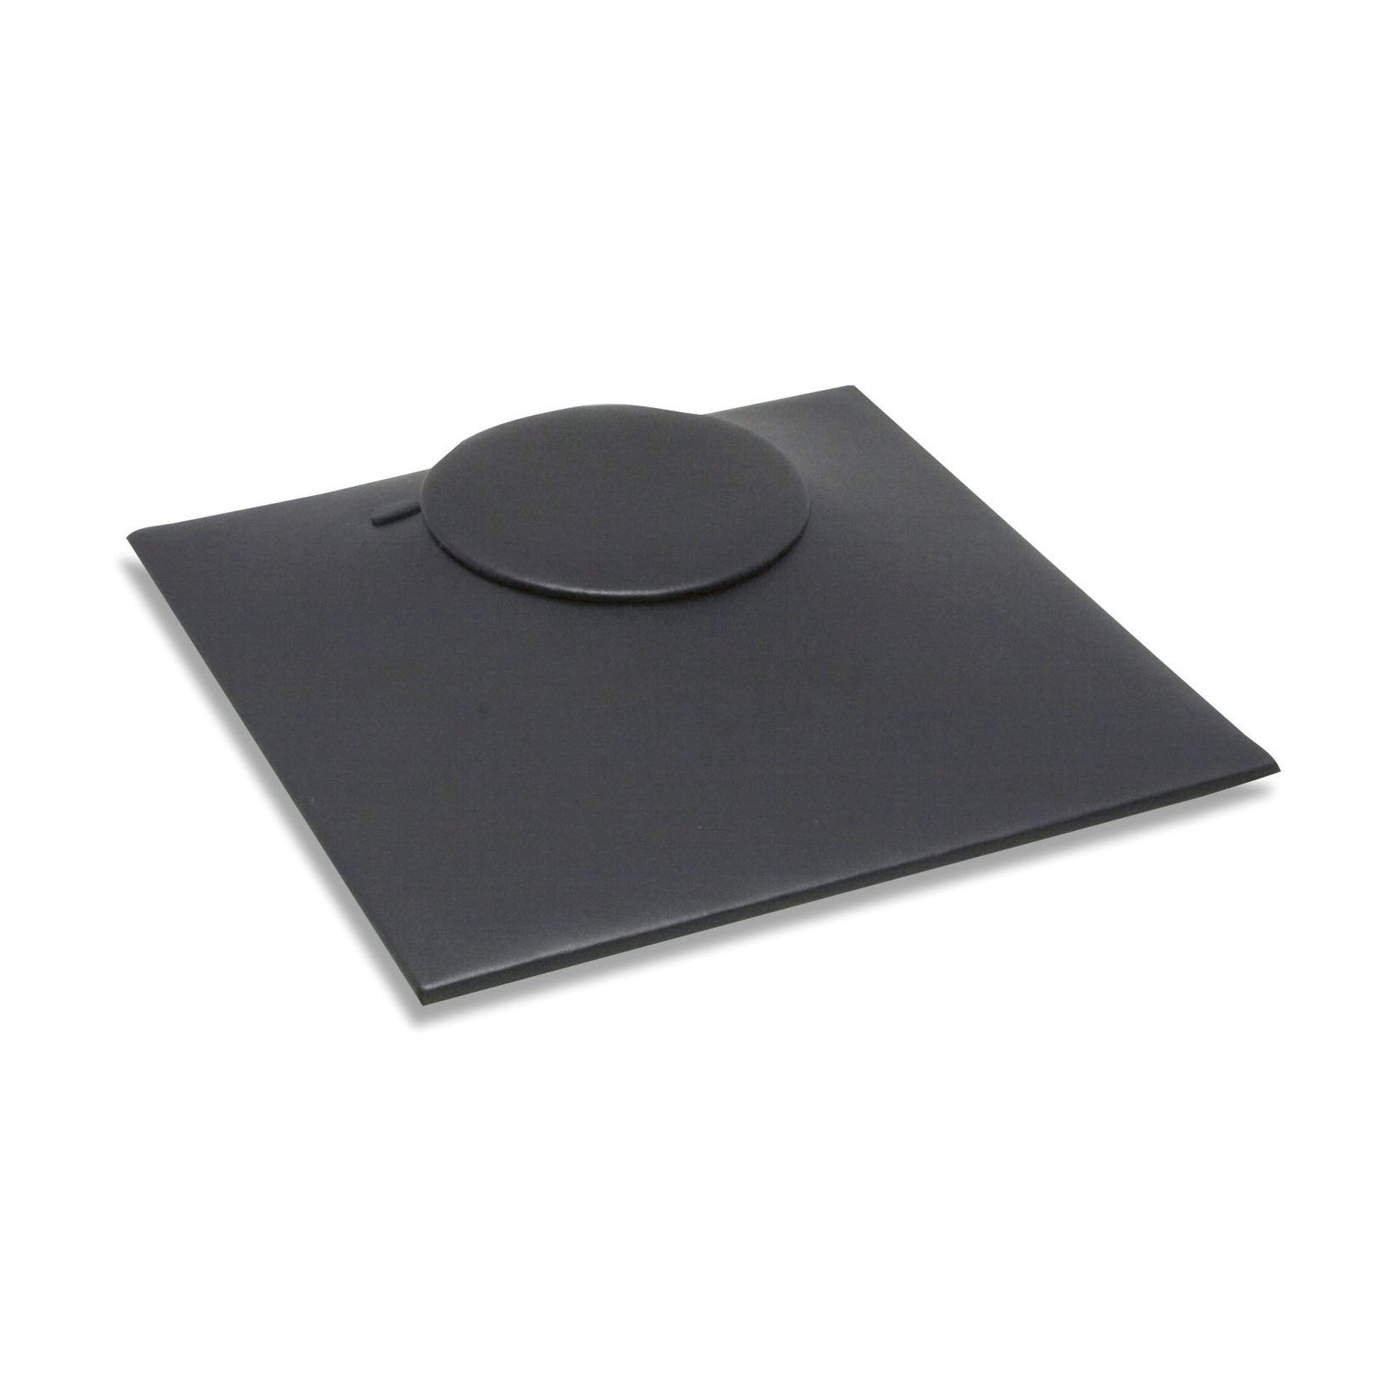 Tray System Einlage, schwarz, für 1 Collier, 224 x 224 mm - 1 Stück